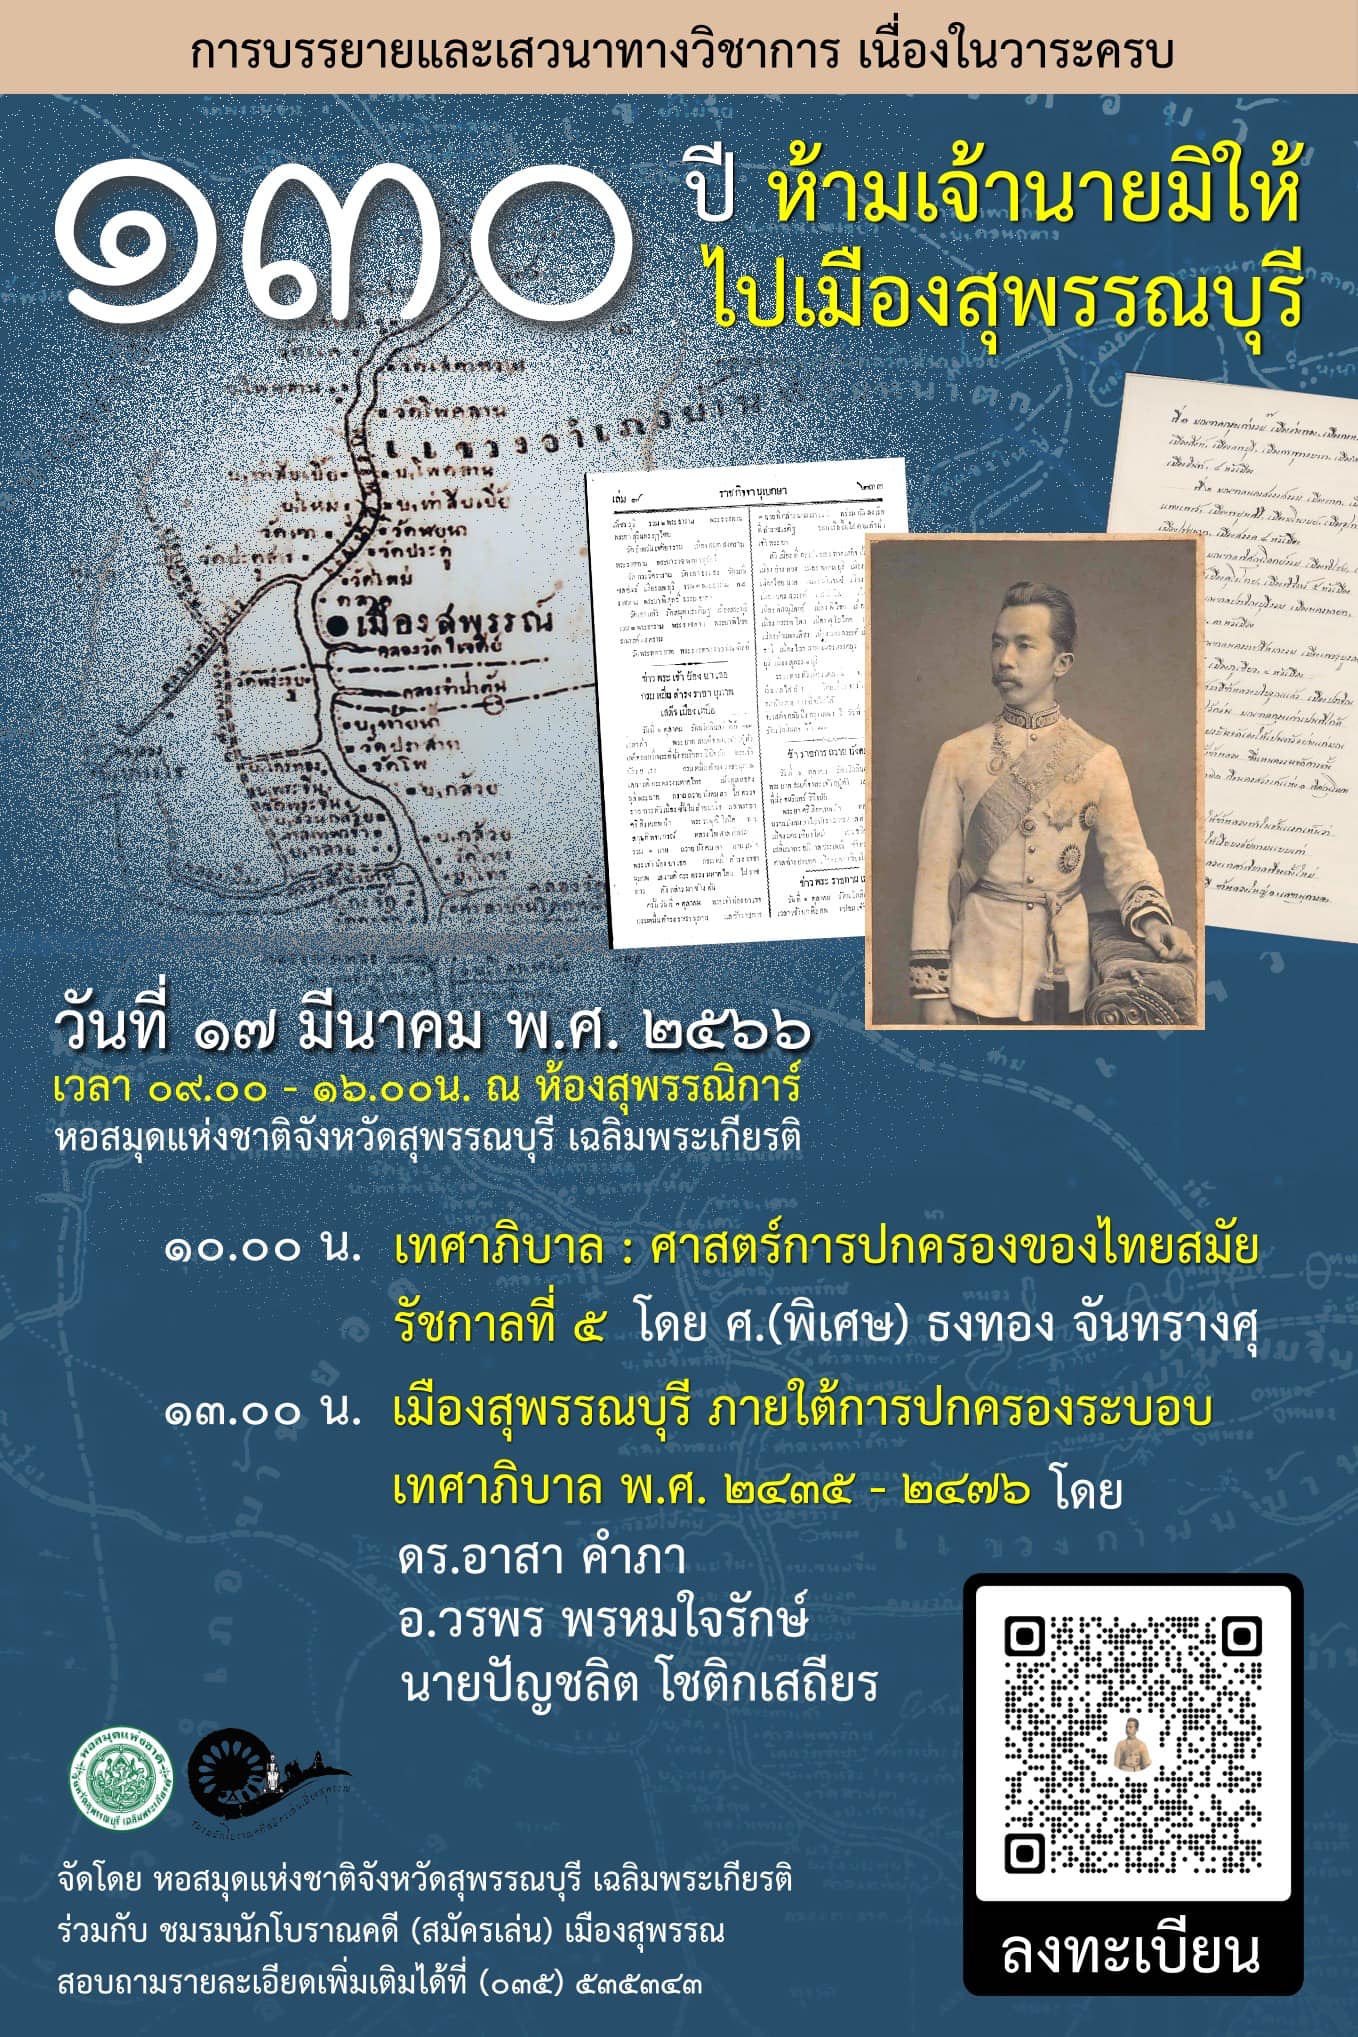 ขอเชิญร่วมฟังบรรยายและเสวนาเนื่องในวาระครบ 130 ปี ห้ามเจ้านายมิให้ไปเมืองสุพรรณบุรี "เทศาภิบาล : ศาสตร์การปกครองของไทย"สมัยรัชกาลที่ 5